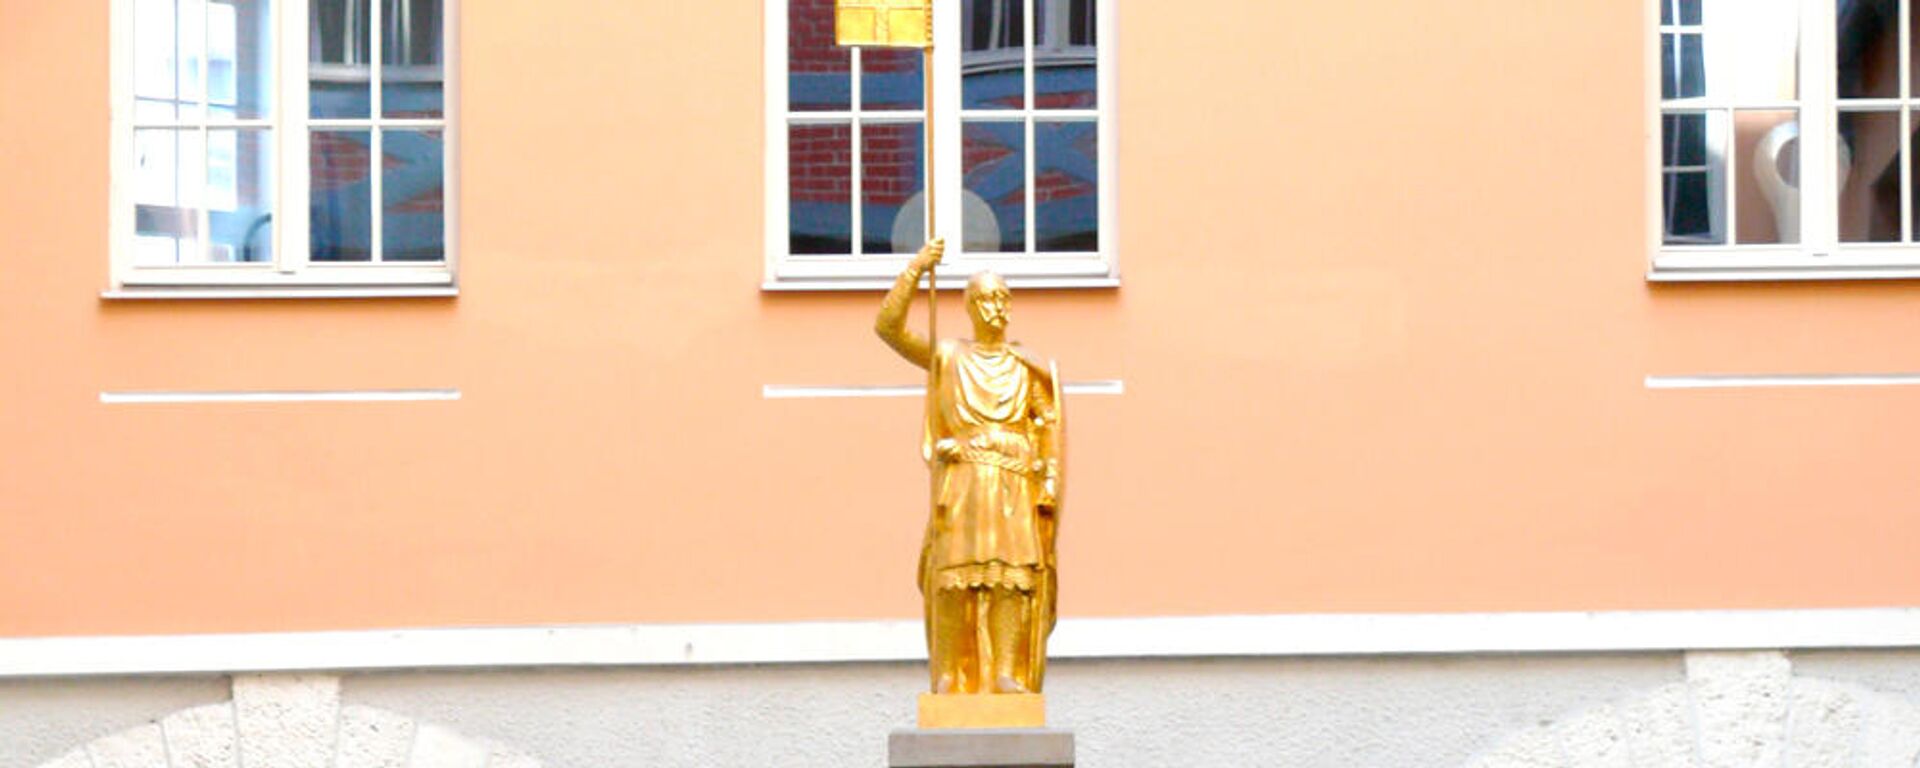 Статуя Золотой рыцарь в Риге - Sputnik Латвия, 1920, 22.07.2021